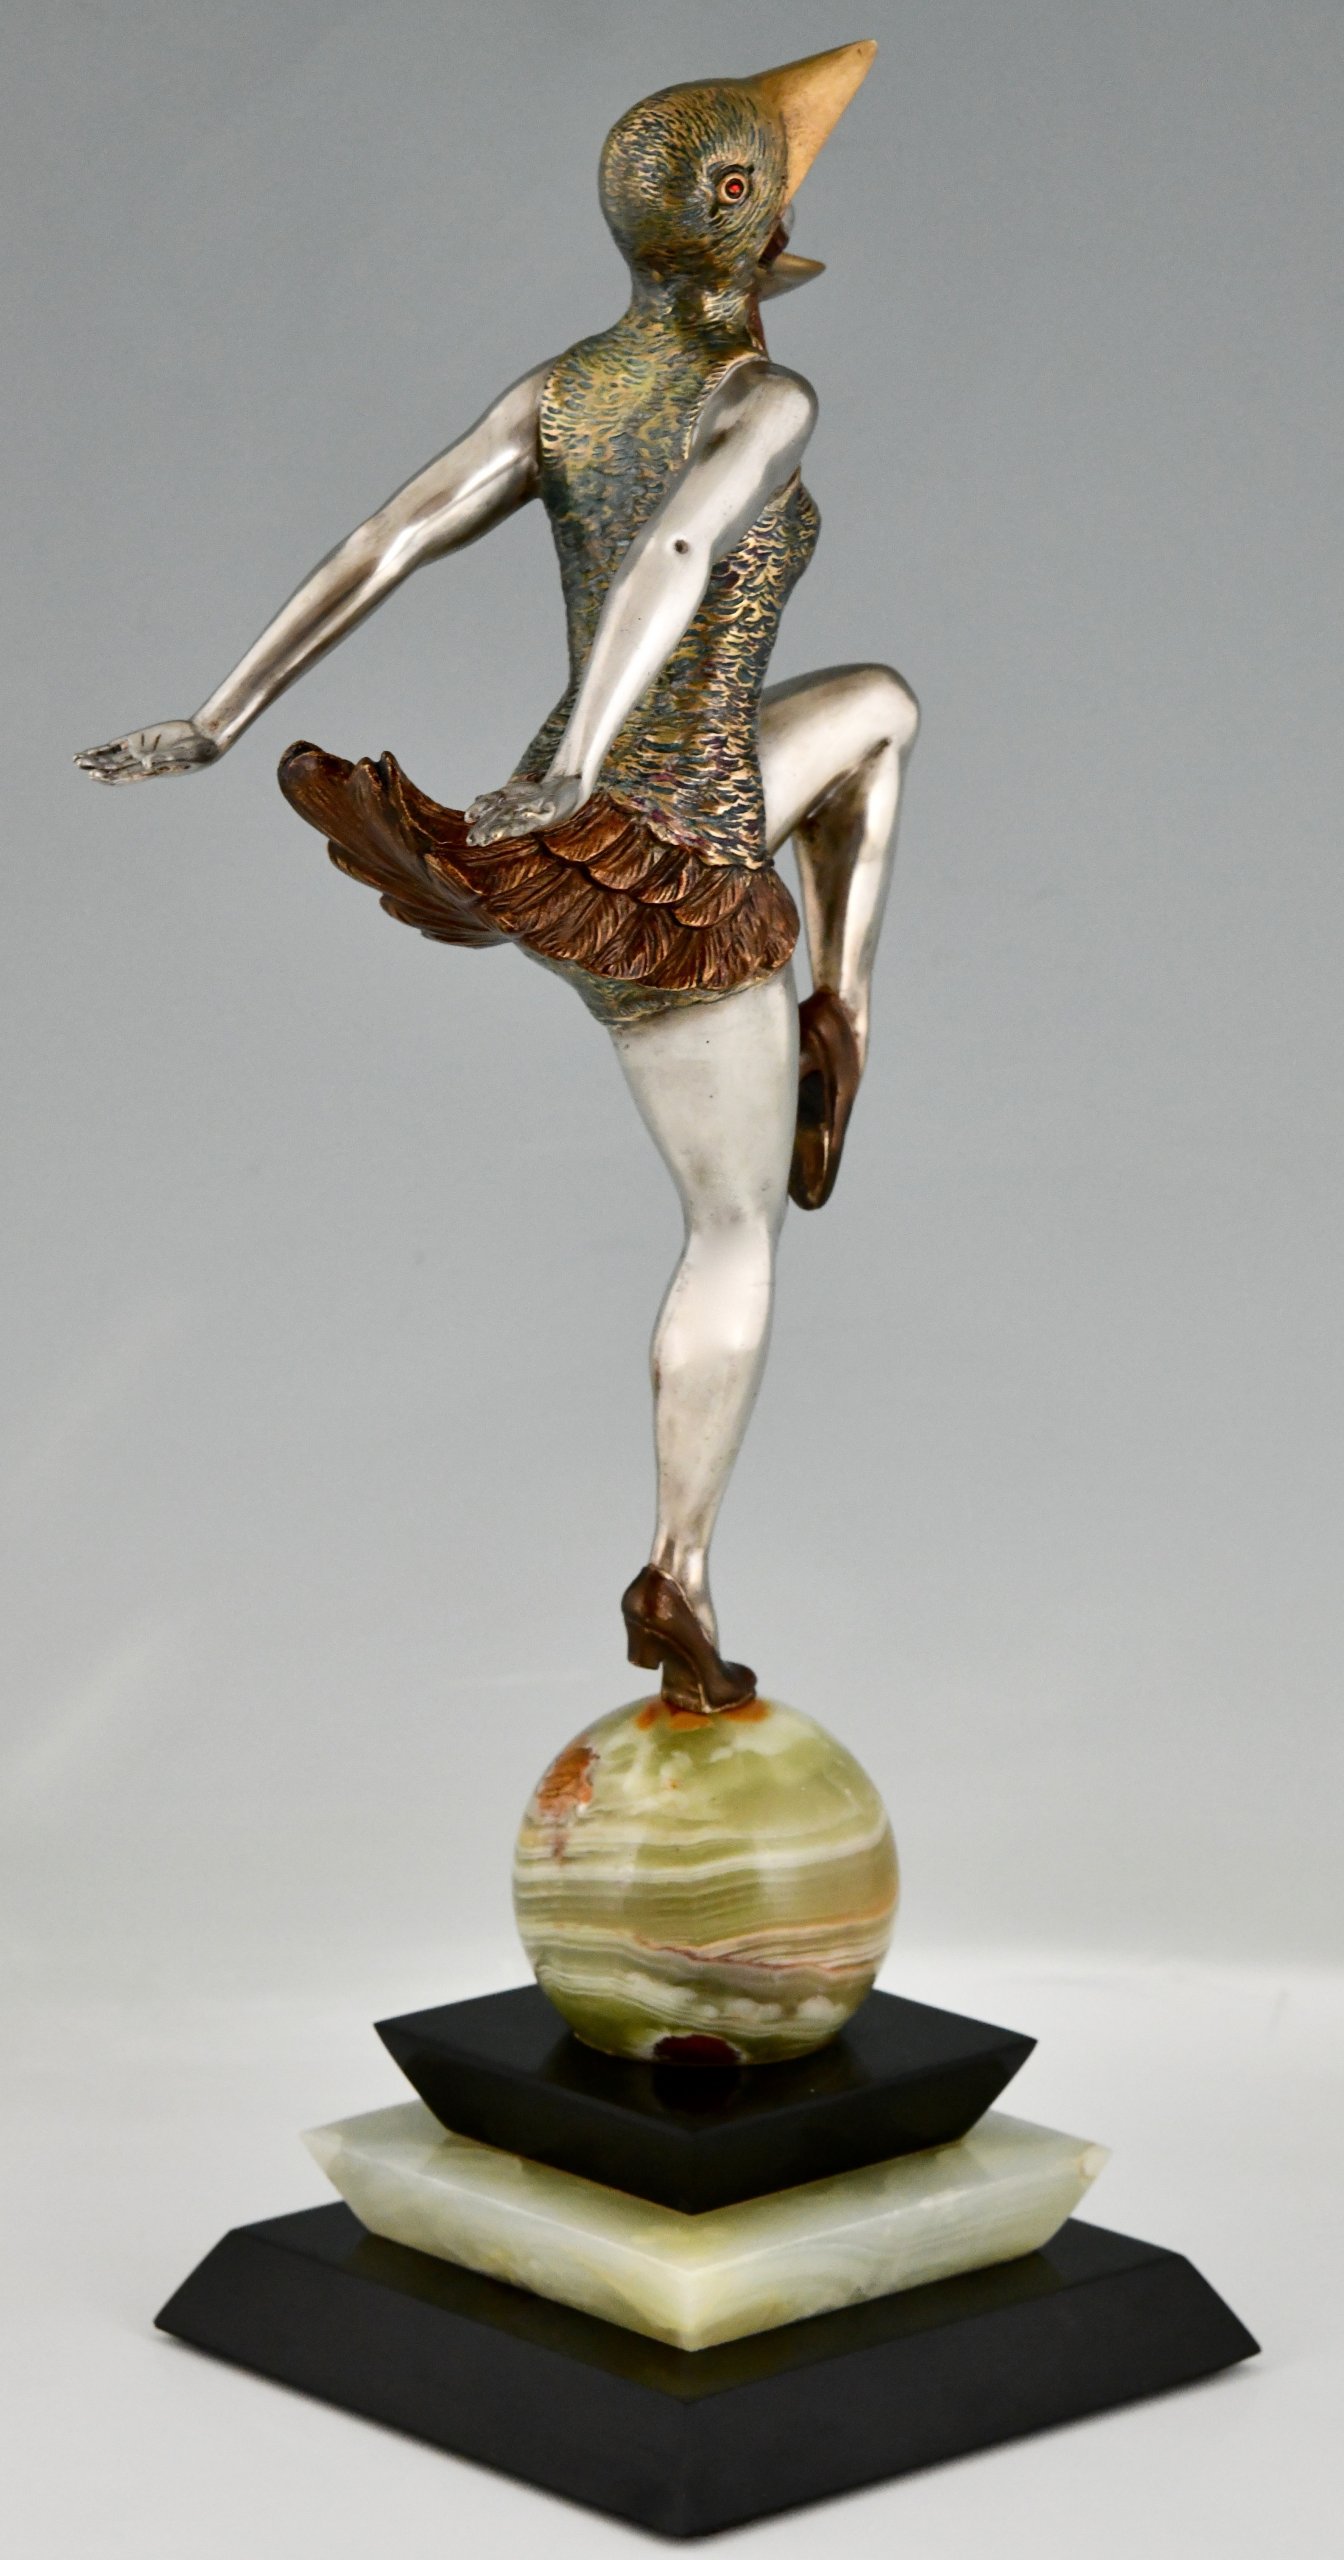 Art Deco bronze sculpture dancer in bird costume.